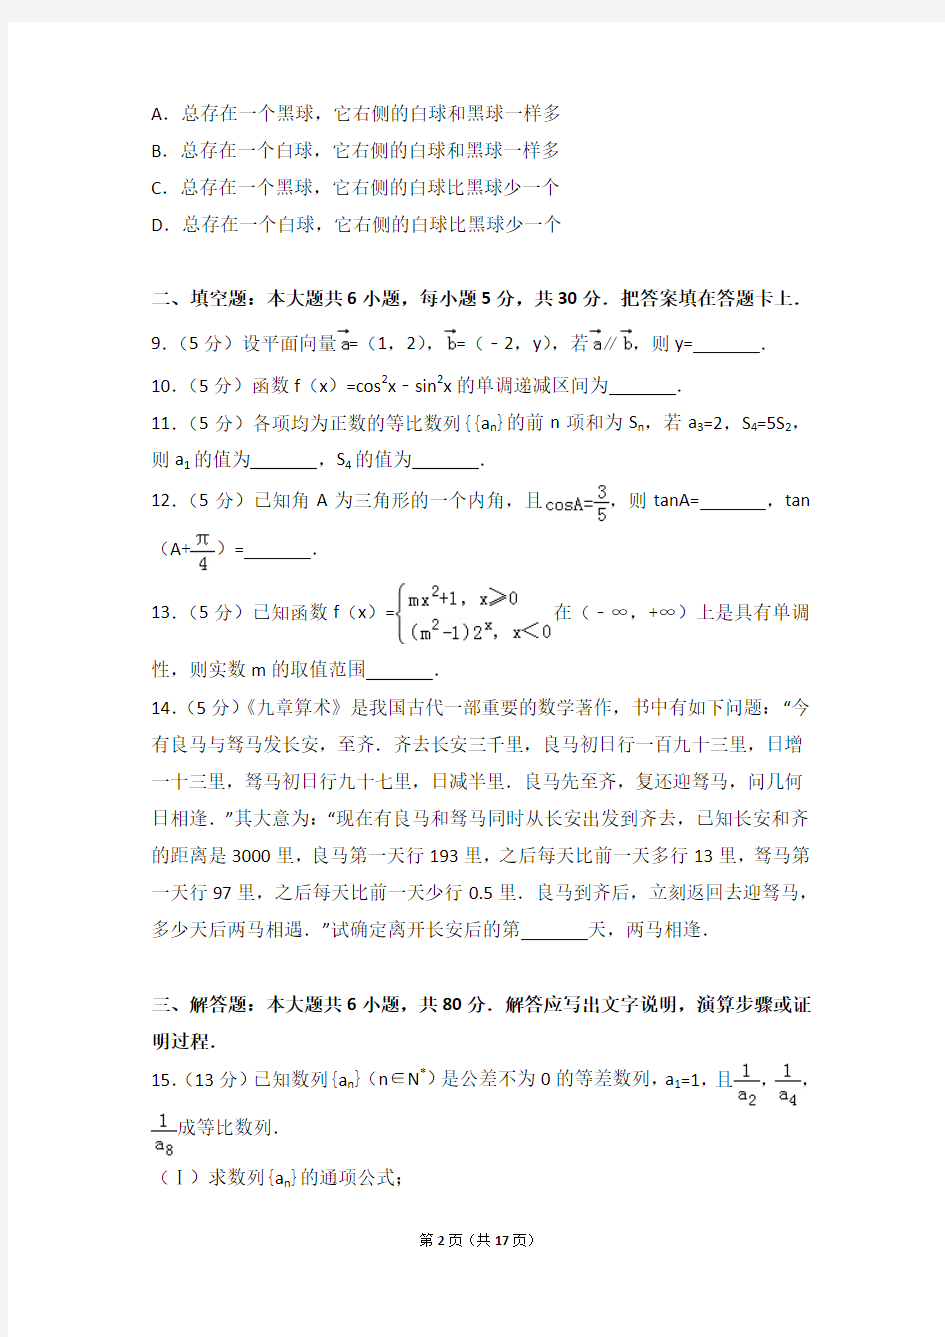 【真题】17年北京市朝阳区高三(上)数学期中试卷含答案(理科)